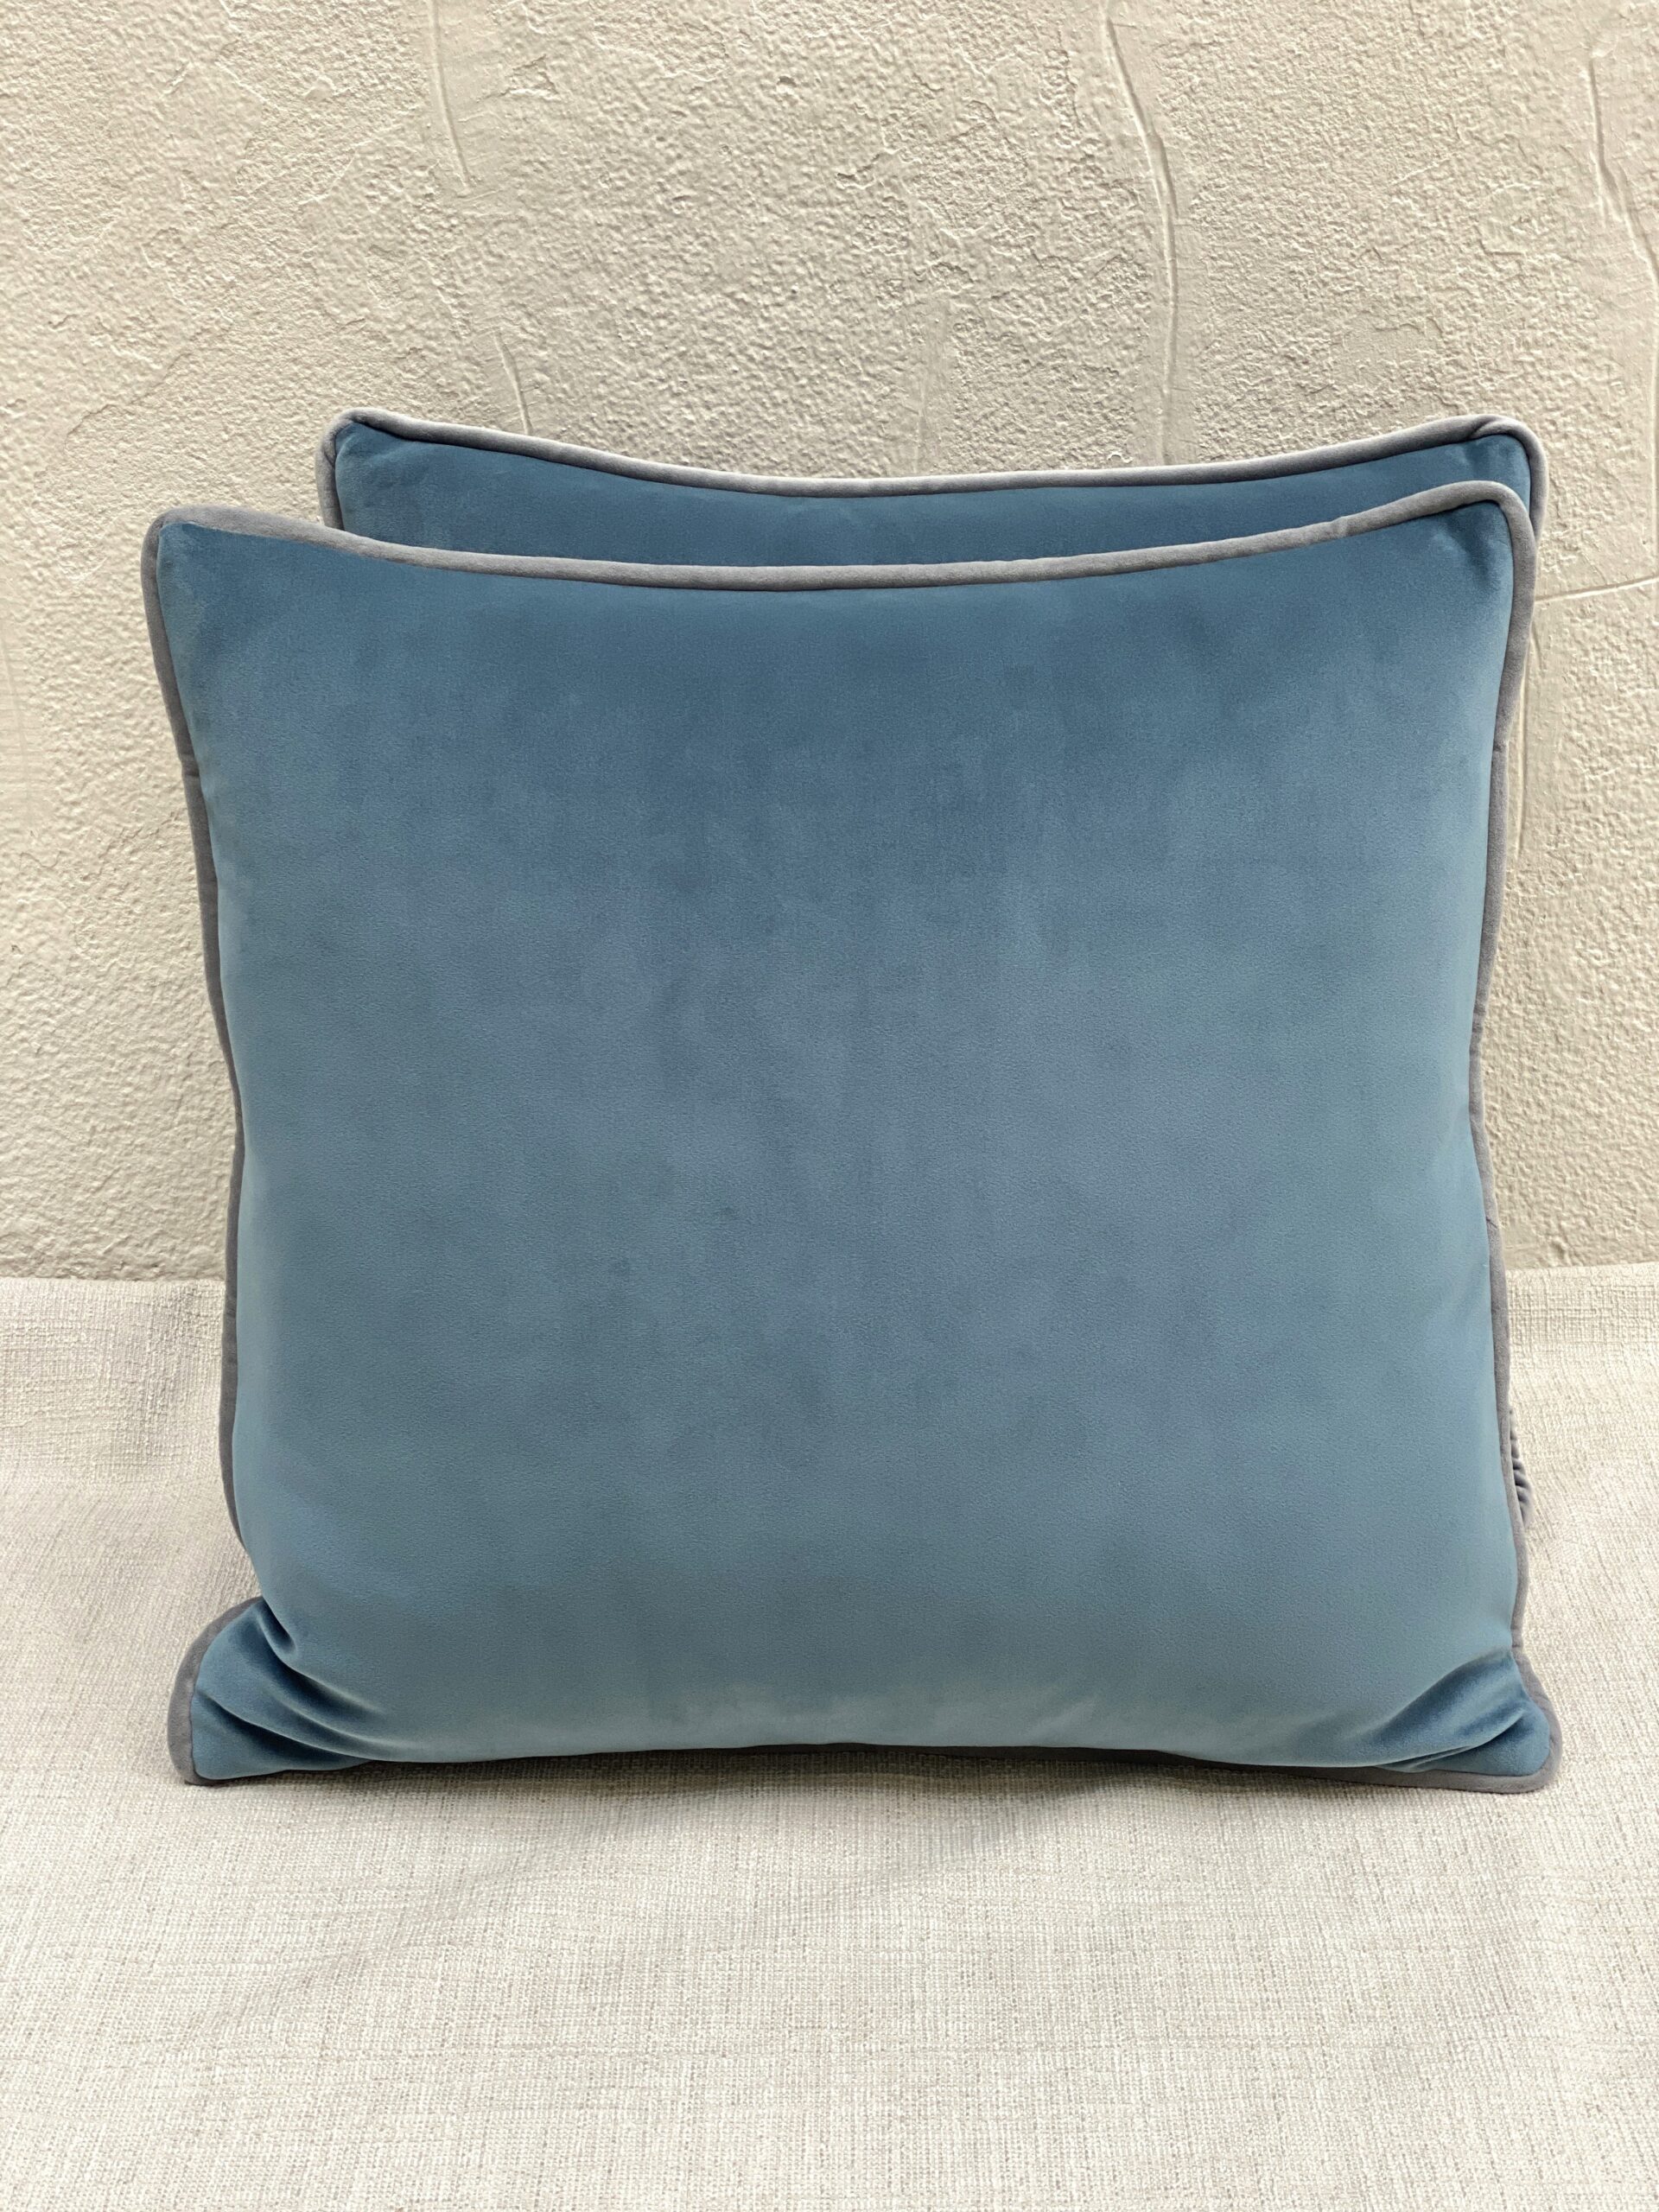 Trend 05125 Pillows